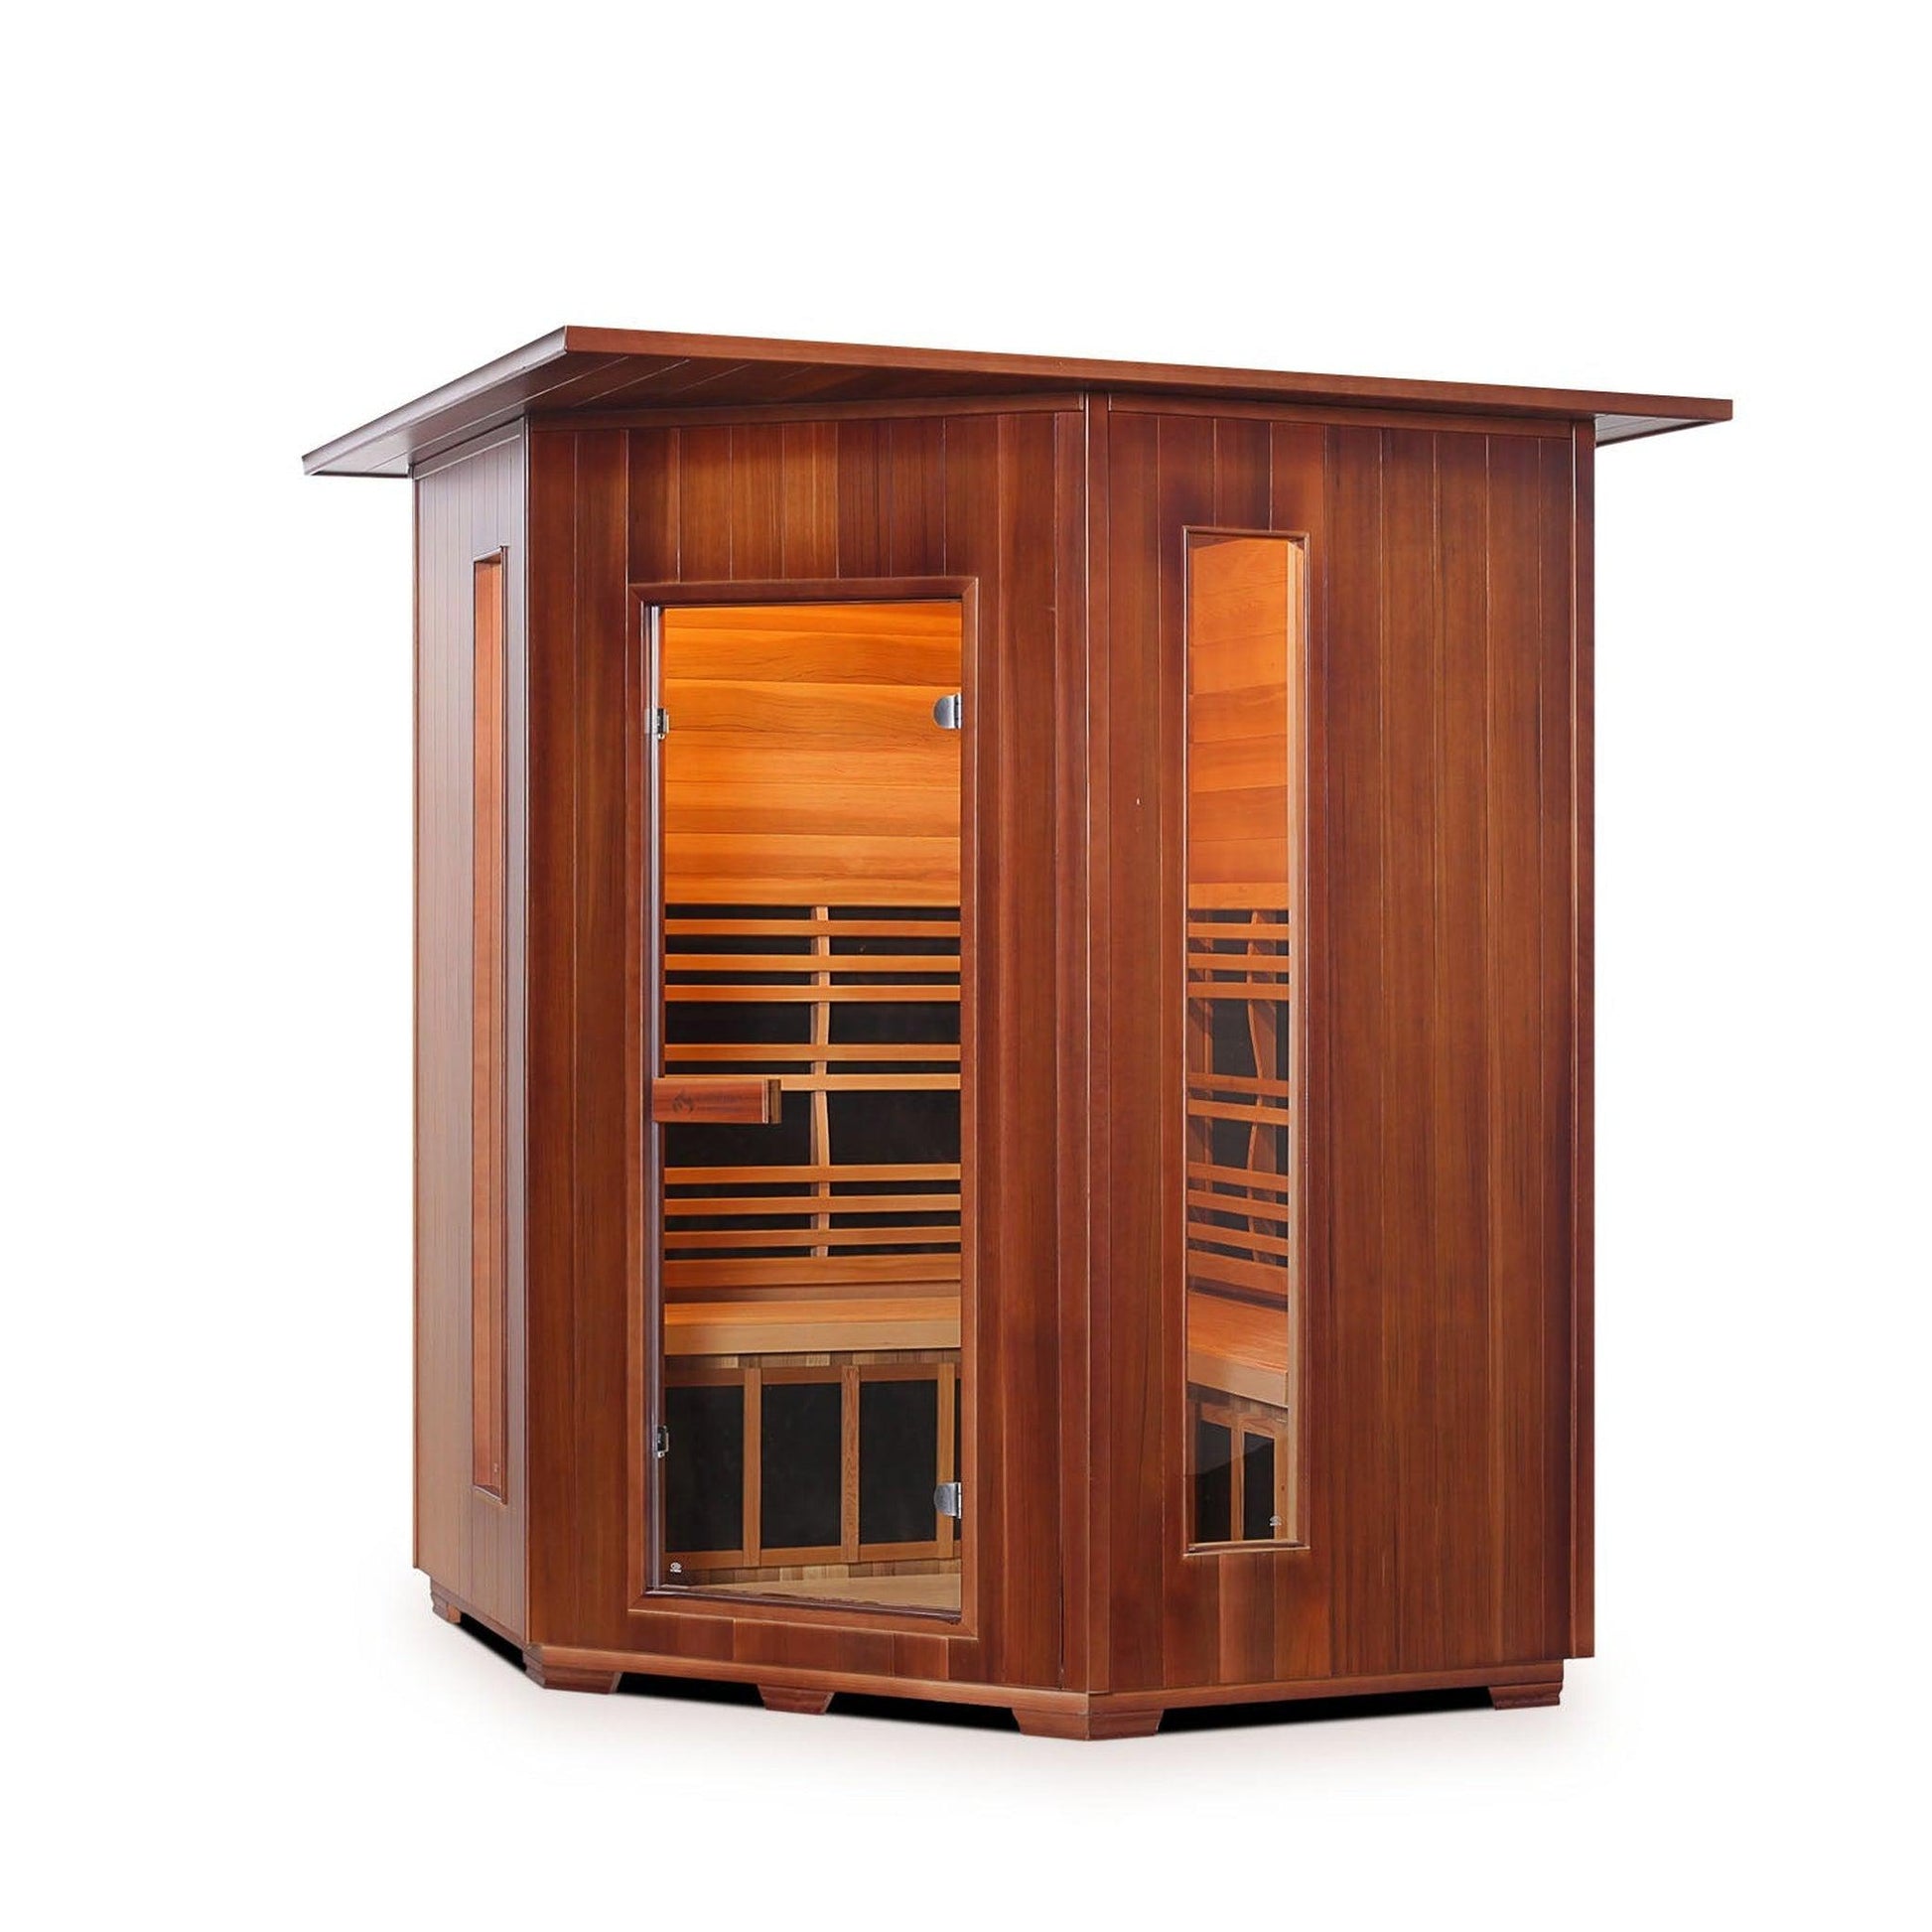 Enlighten InfraNature Original Rustic 4-Person Corner Full Spectrum Infrared Indoor Sauna